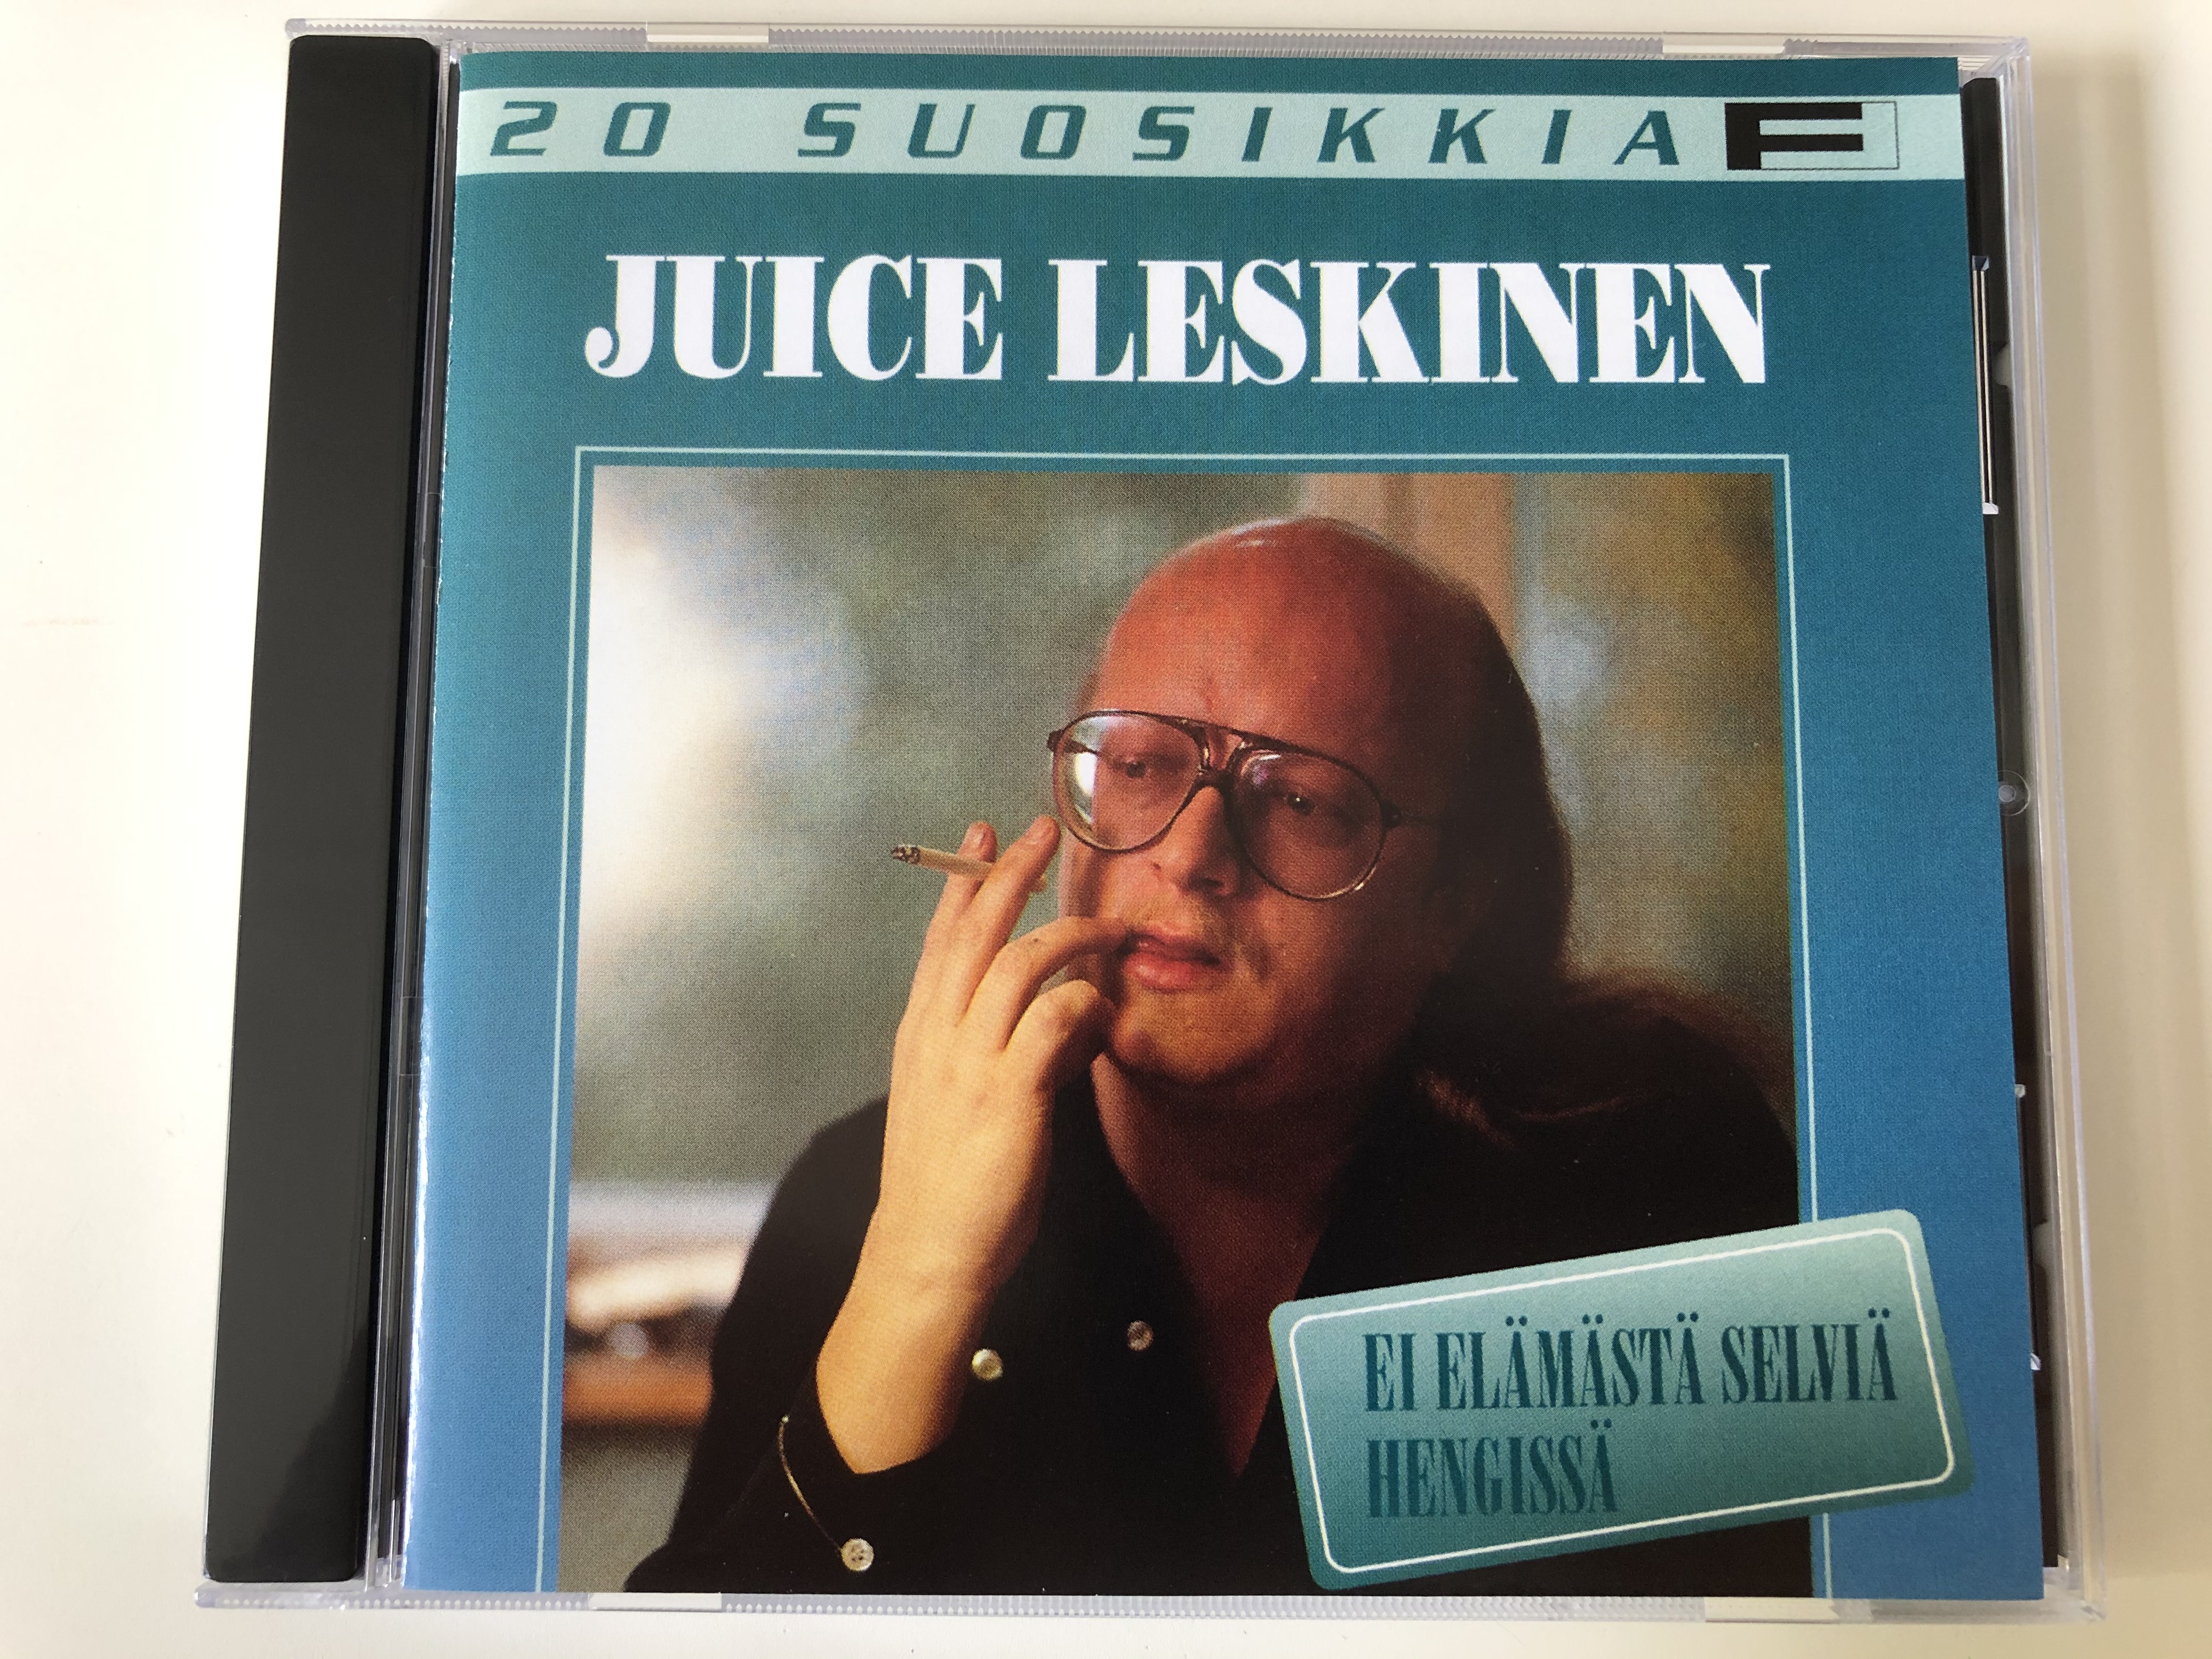 20-suosikkia-juice-leskinen-ei-el-m-st-selvi-hengiss-fazer-records-audio-cd-1995-0630-10817-2-1-.jpg